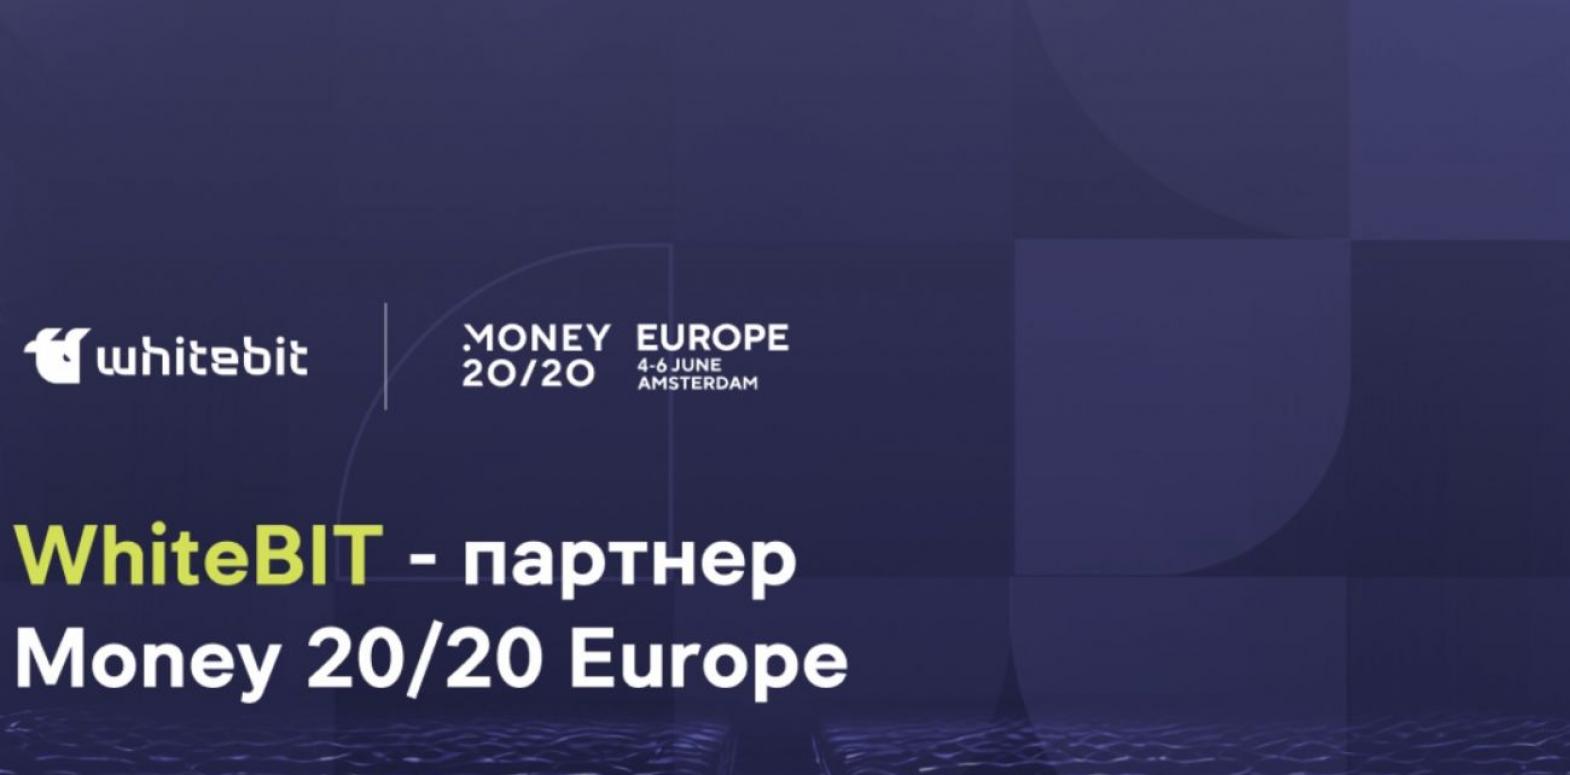 WhiteBIT станет партнером самого масштабного мероприятия в финансовой сфере Money20/20 Europe